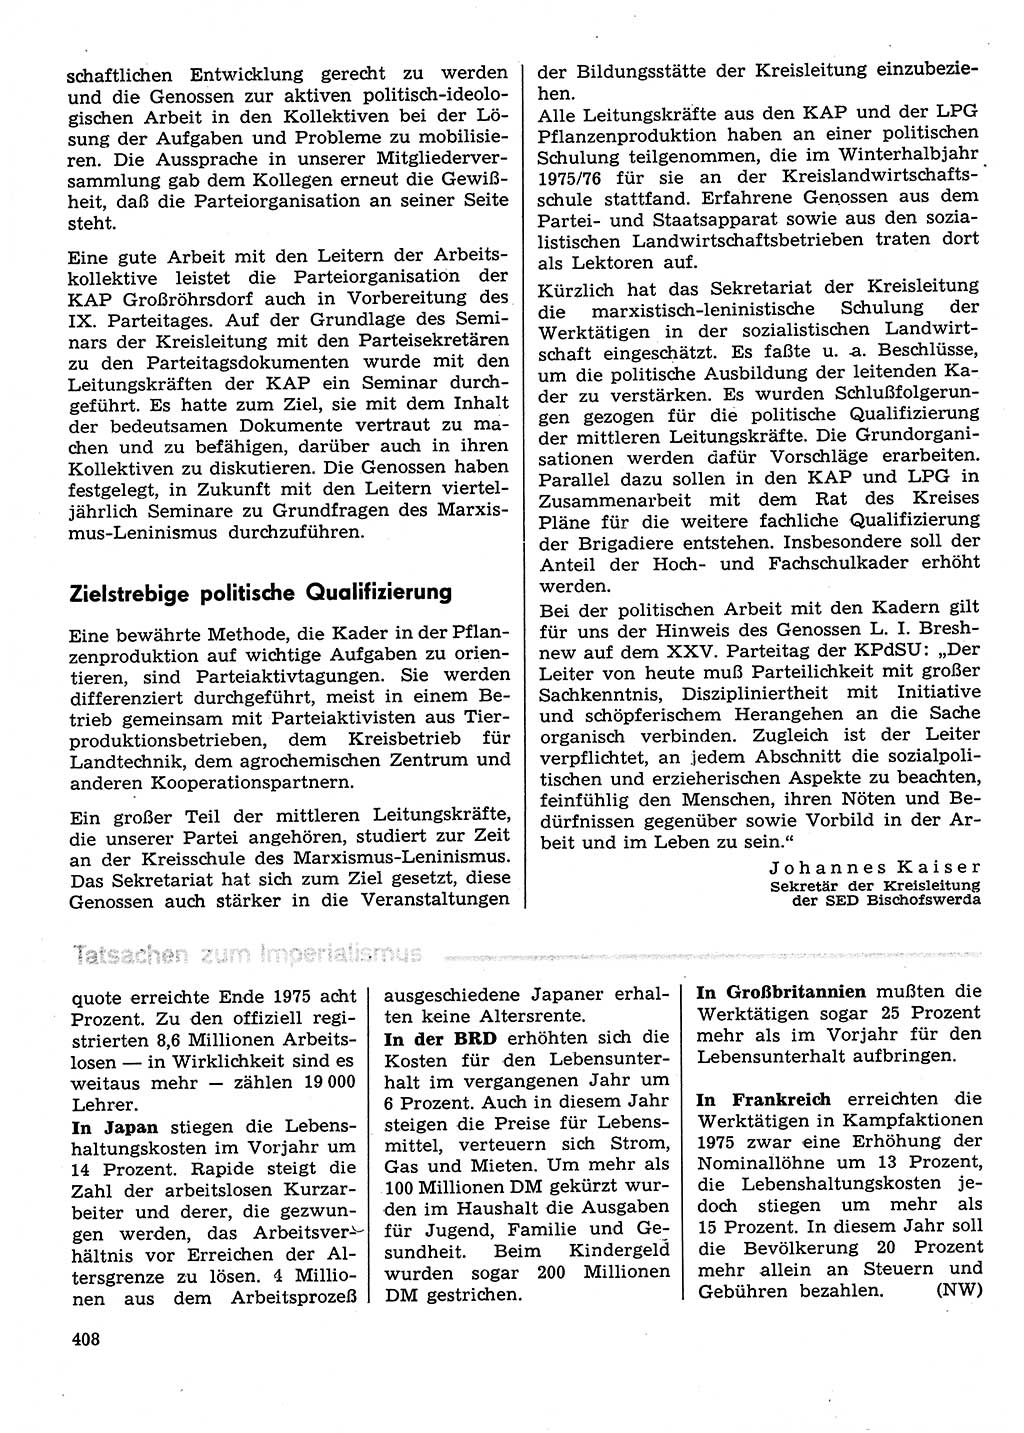 Neuer Weg (NW), Organ des Zentralkomitees (ZK) der SED (Sozialistische Einheitspartei Deutschlands) für Fragen des Parteilebens, 31. Jahrgang [Deutsche Demokratische Republik (DDR)] 1976, Seite 408 (NW ZK SED DDR 1976, S. 408)